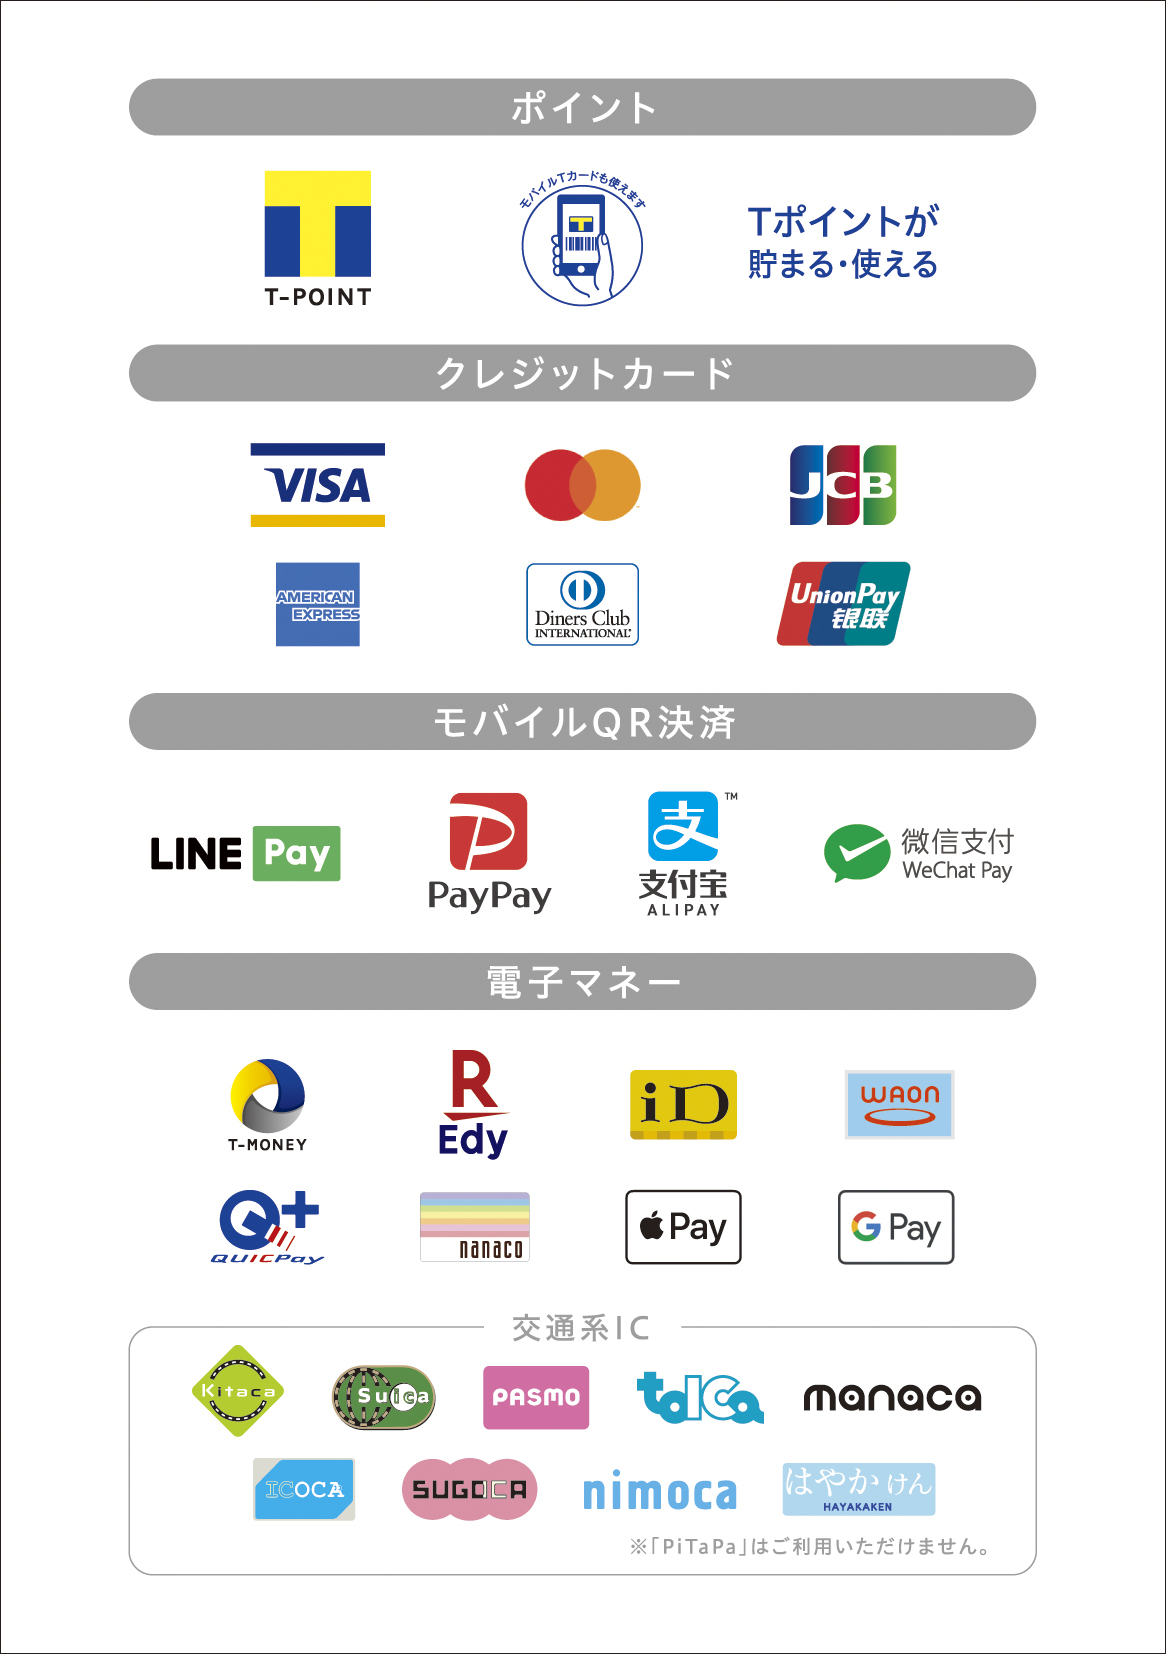 キタムラでの取り扱い決済一覧 モバイル決済がご利用いただけます（T-MONEY、LINE Pay、PayPay、Alipay、WeChat Pay）